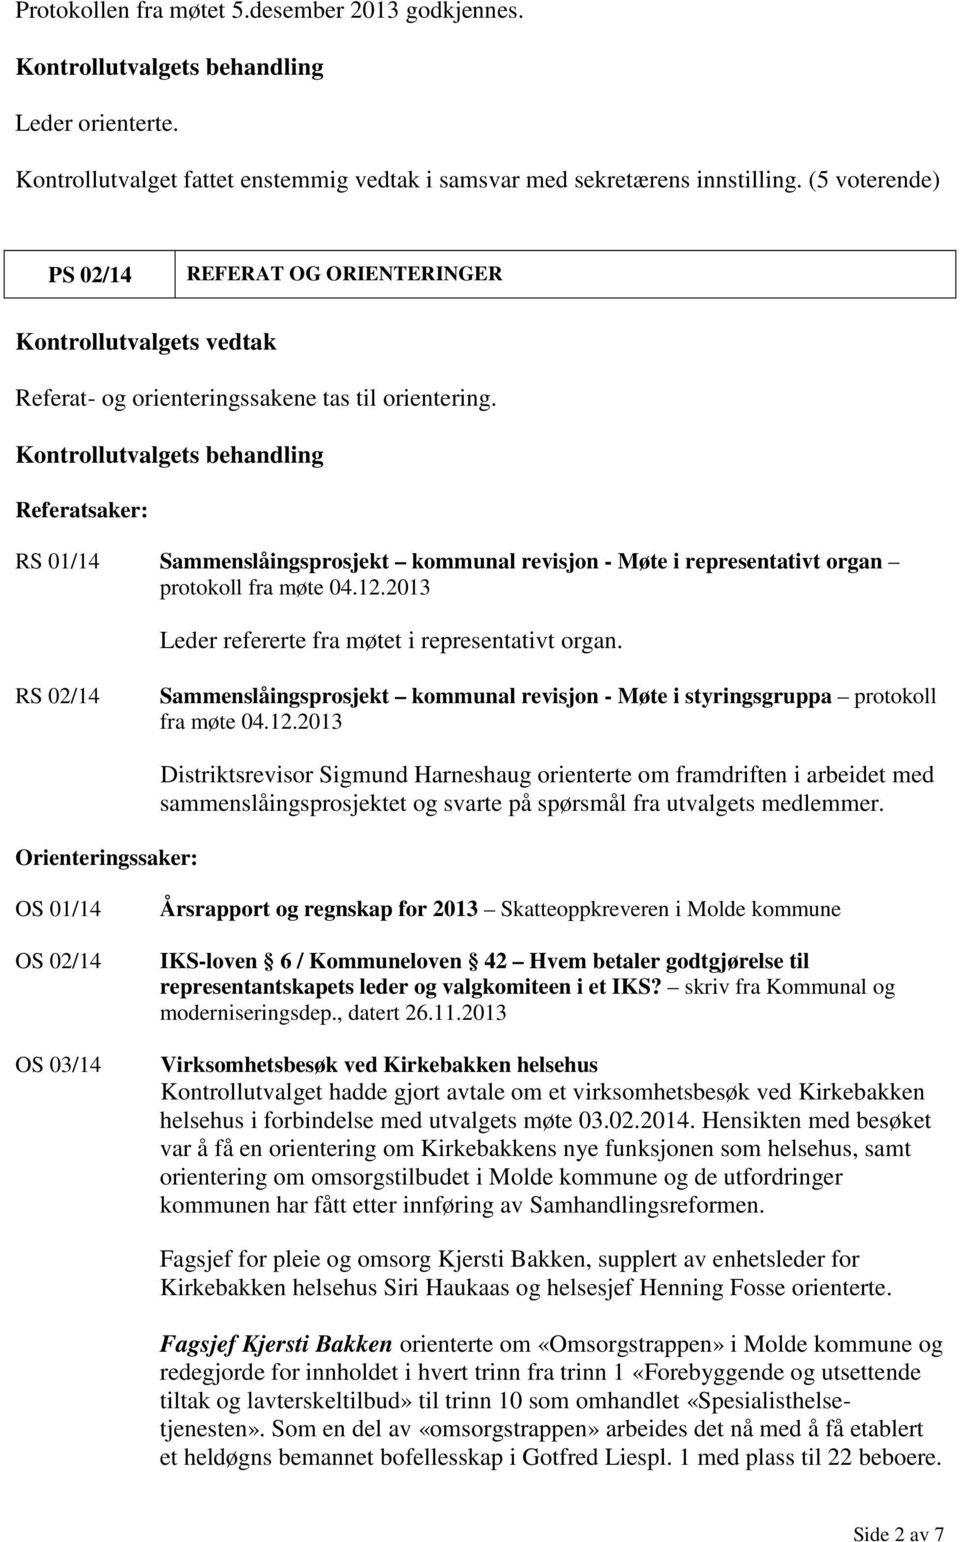 RS 02/14 Sammenslåingsprosjekt kommunal revisjon - Møte i styringsgruppa protokoll fra møte 04.12.